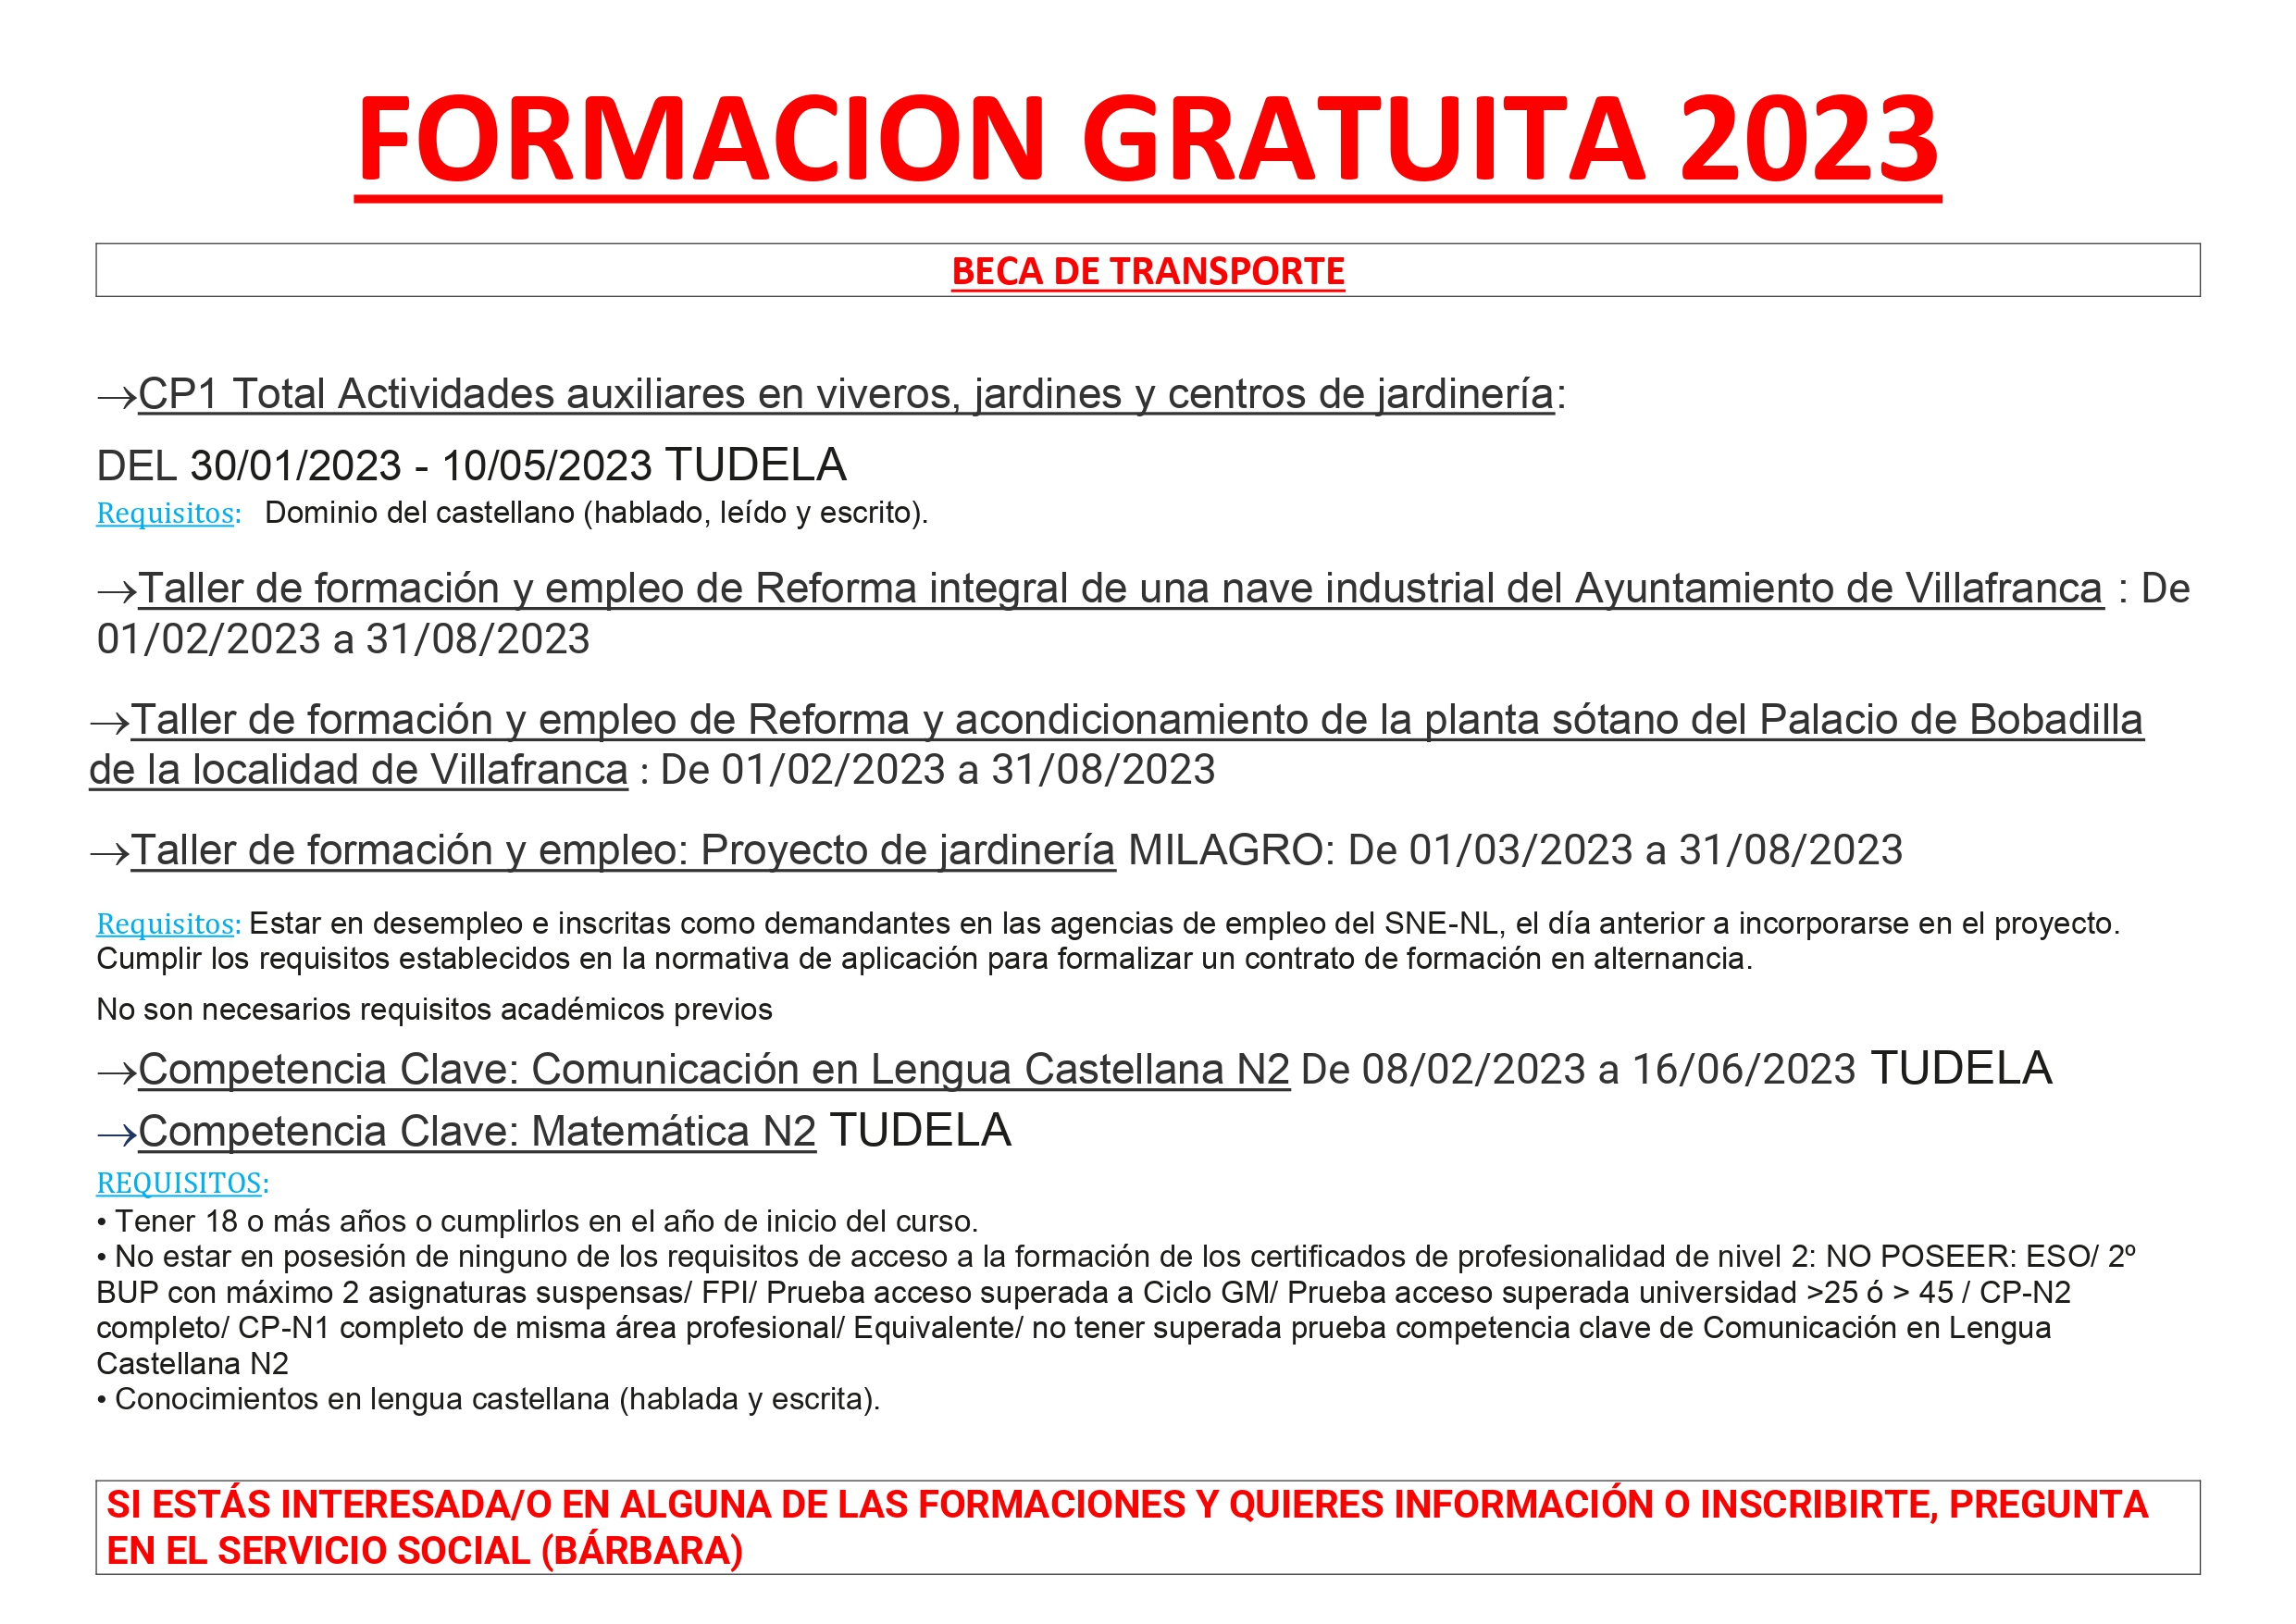 FORMACION GRATUITA ENERO 2023_page-0002